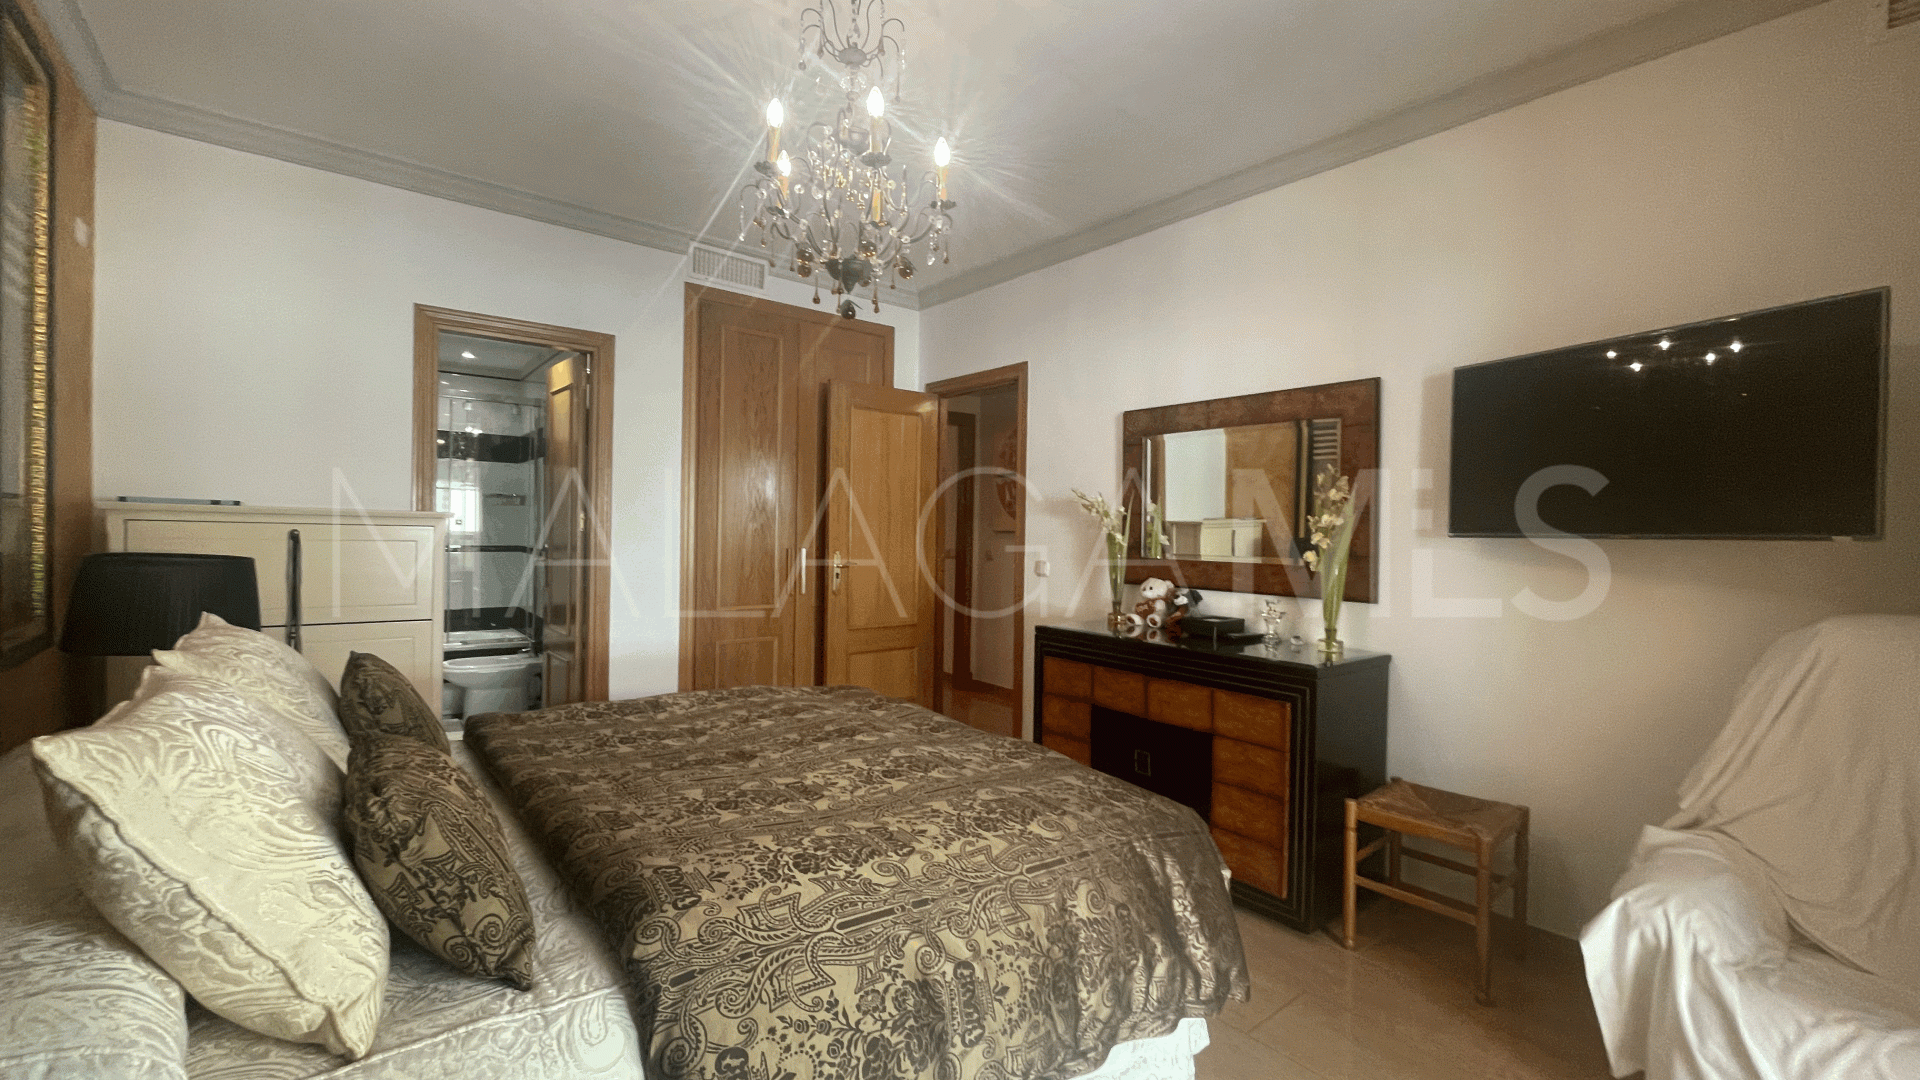 Guadalcantara, apartamento with 3 bedrooms for sale